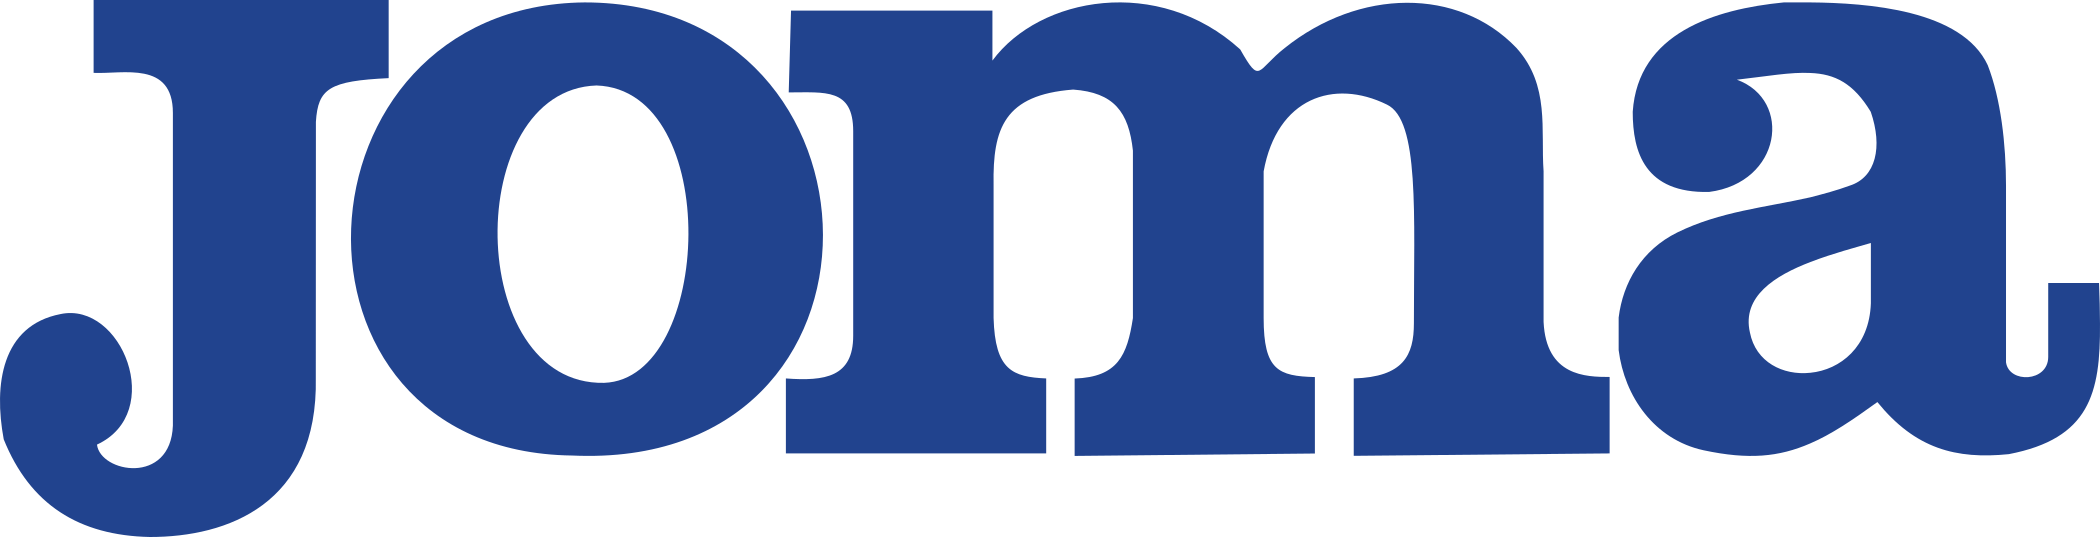 Joma Logo.